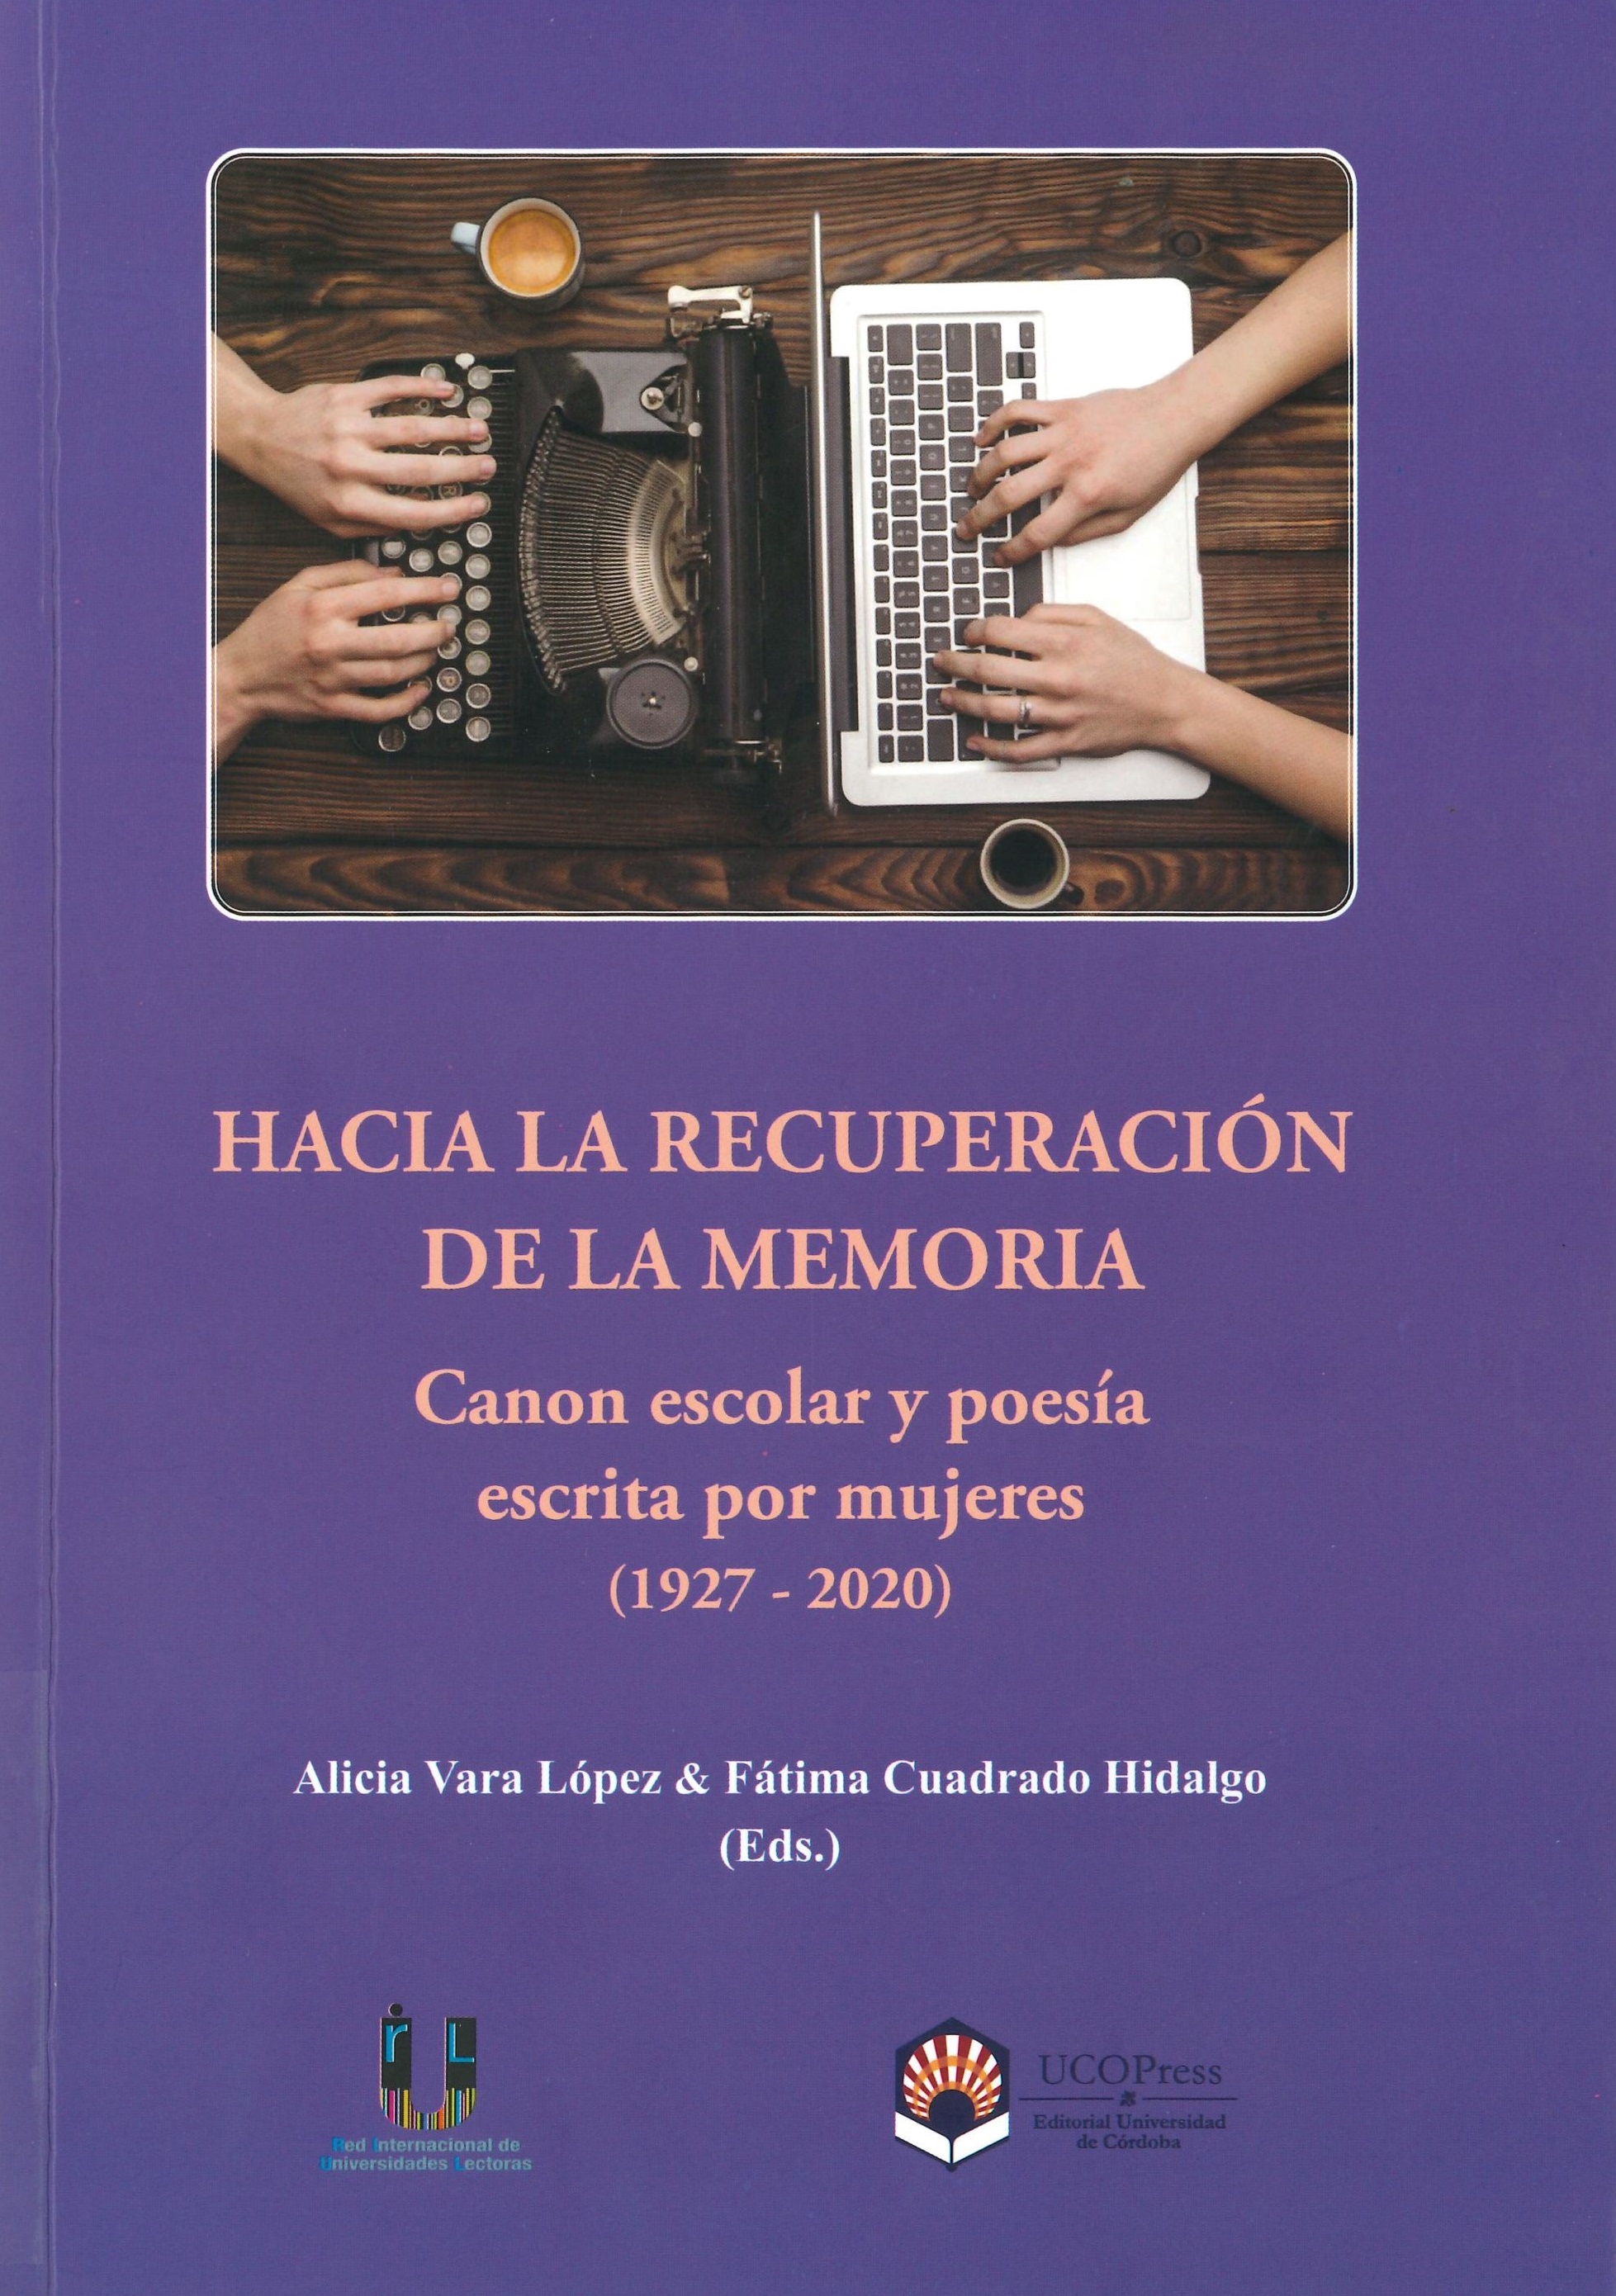 Imagen de portada del libro Hacia la recuperación de la memoria